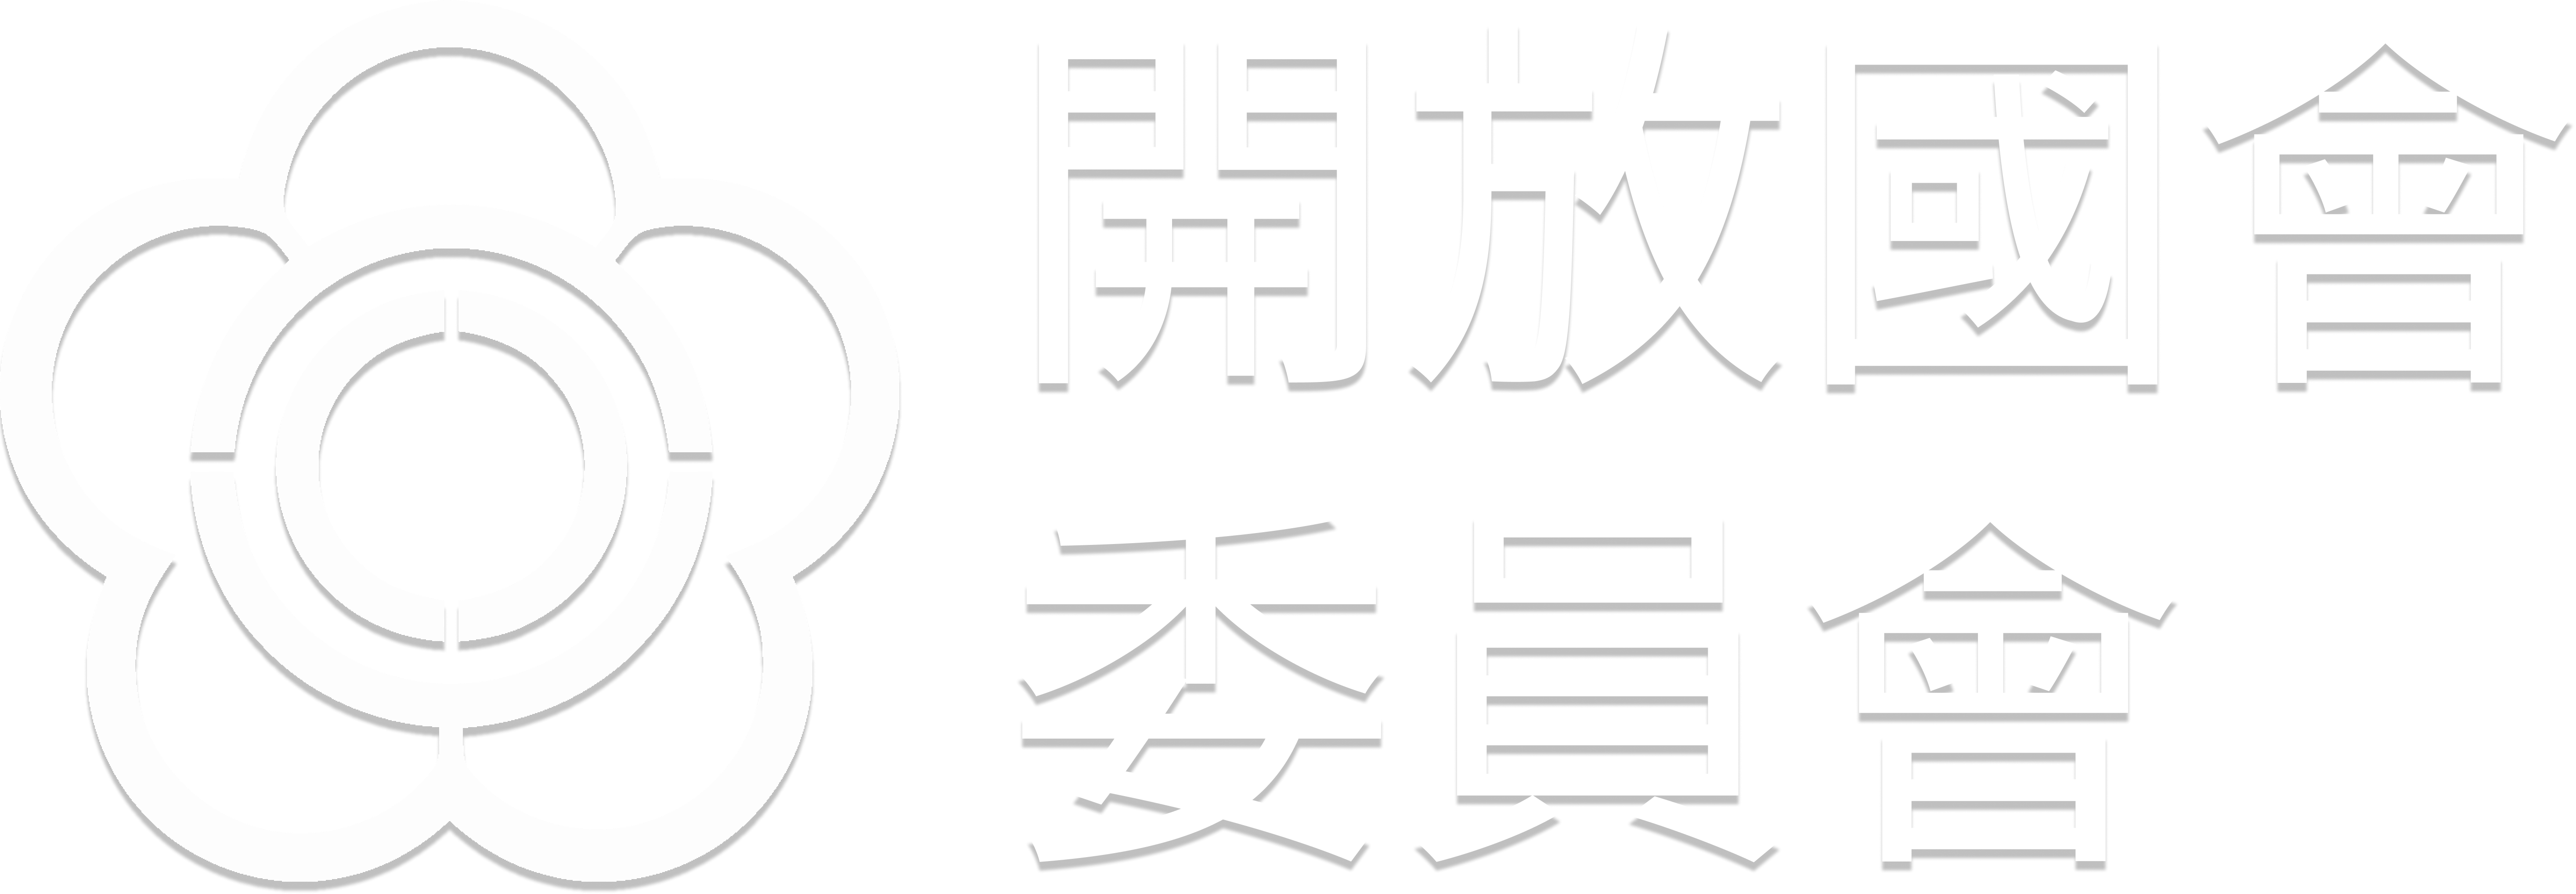 立法院開放國會委員會 Taiwan Open Parliament Multistakeholder Forum